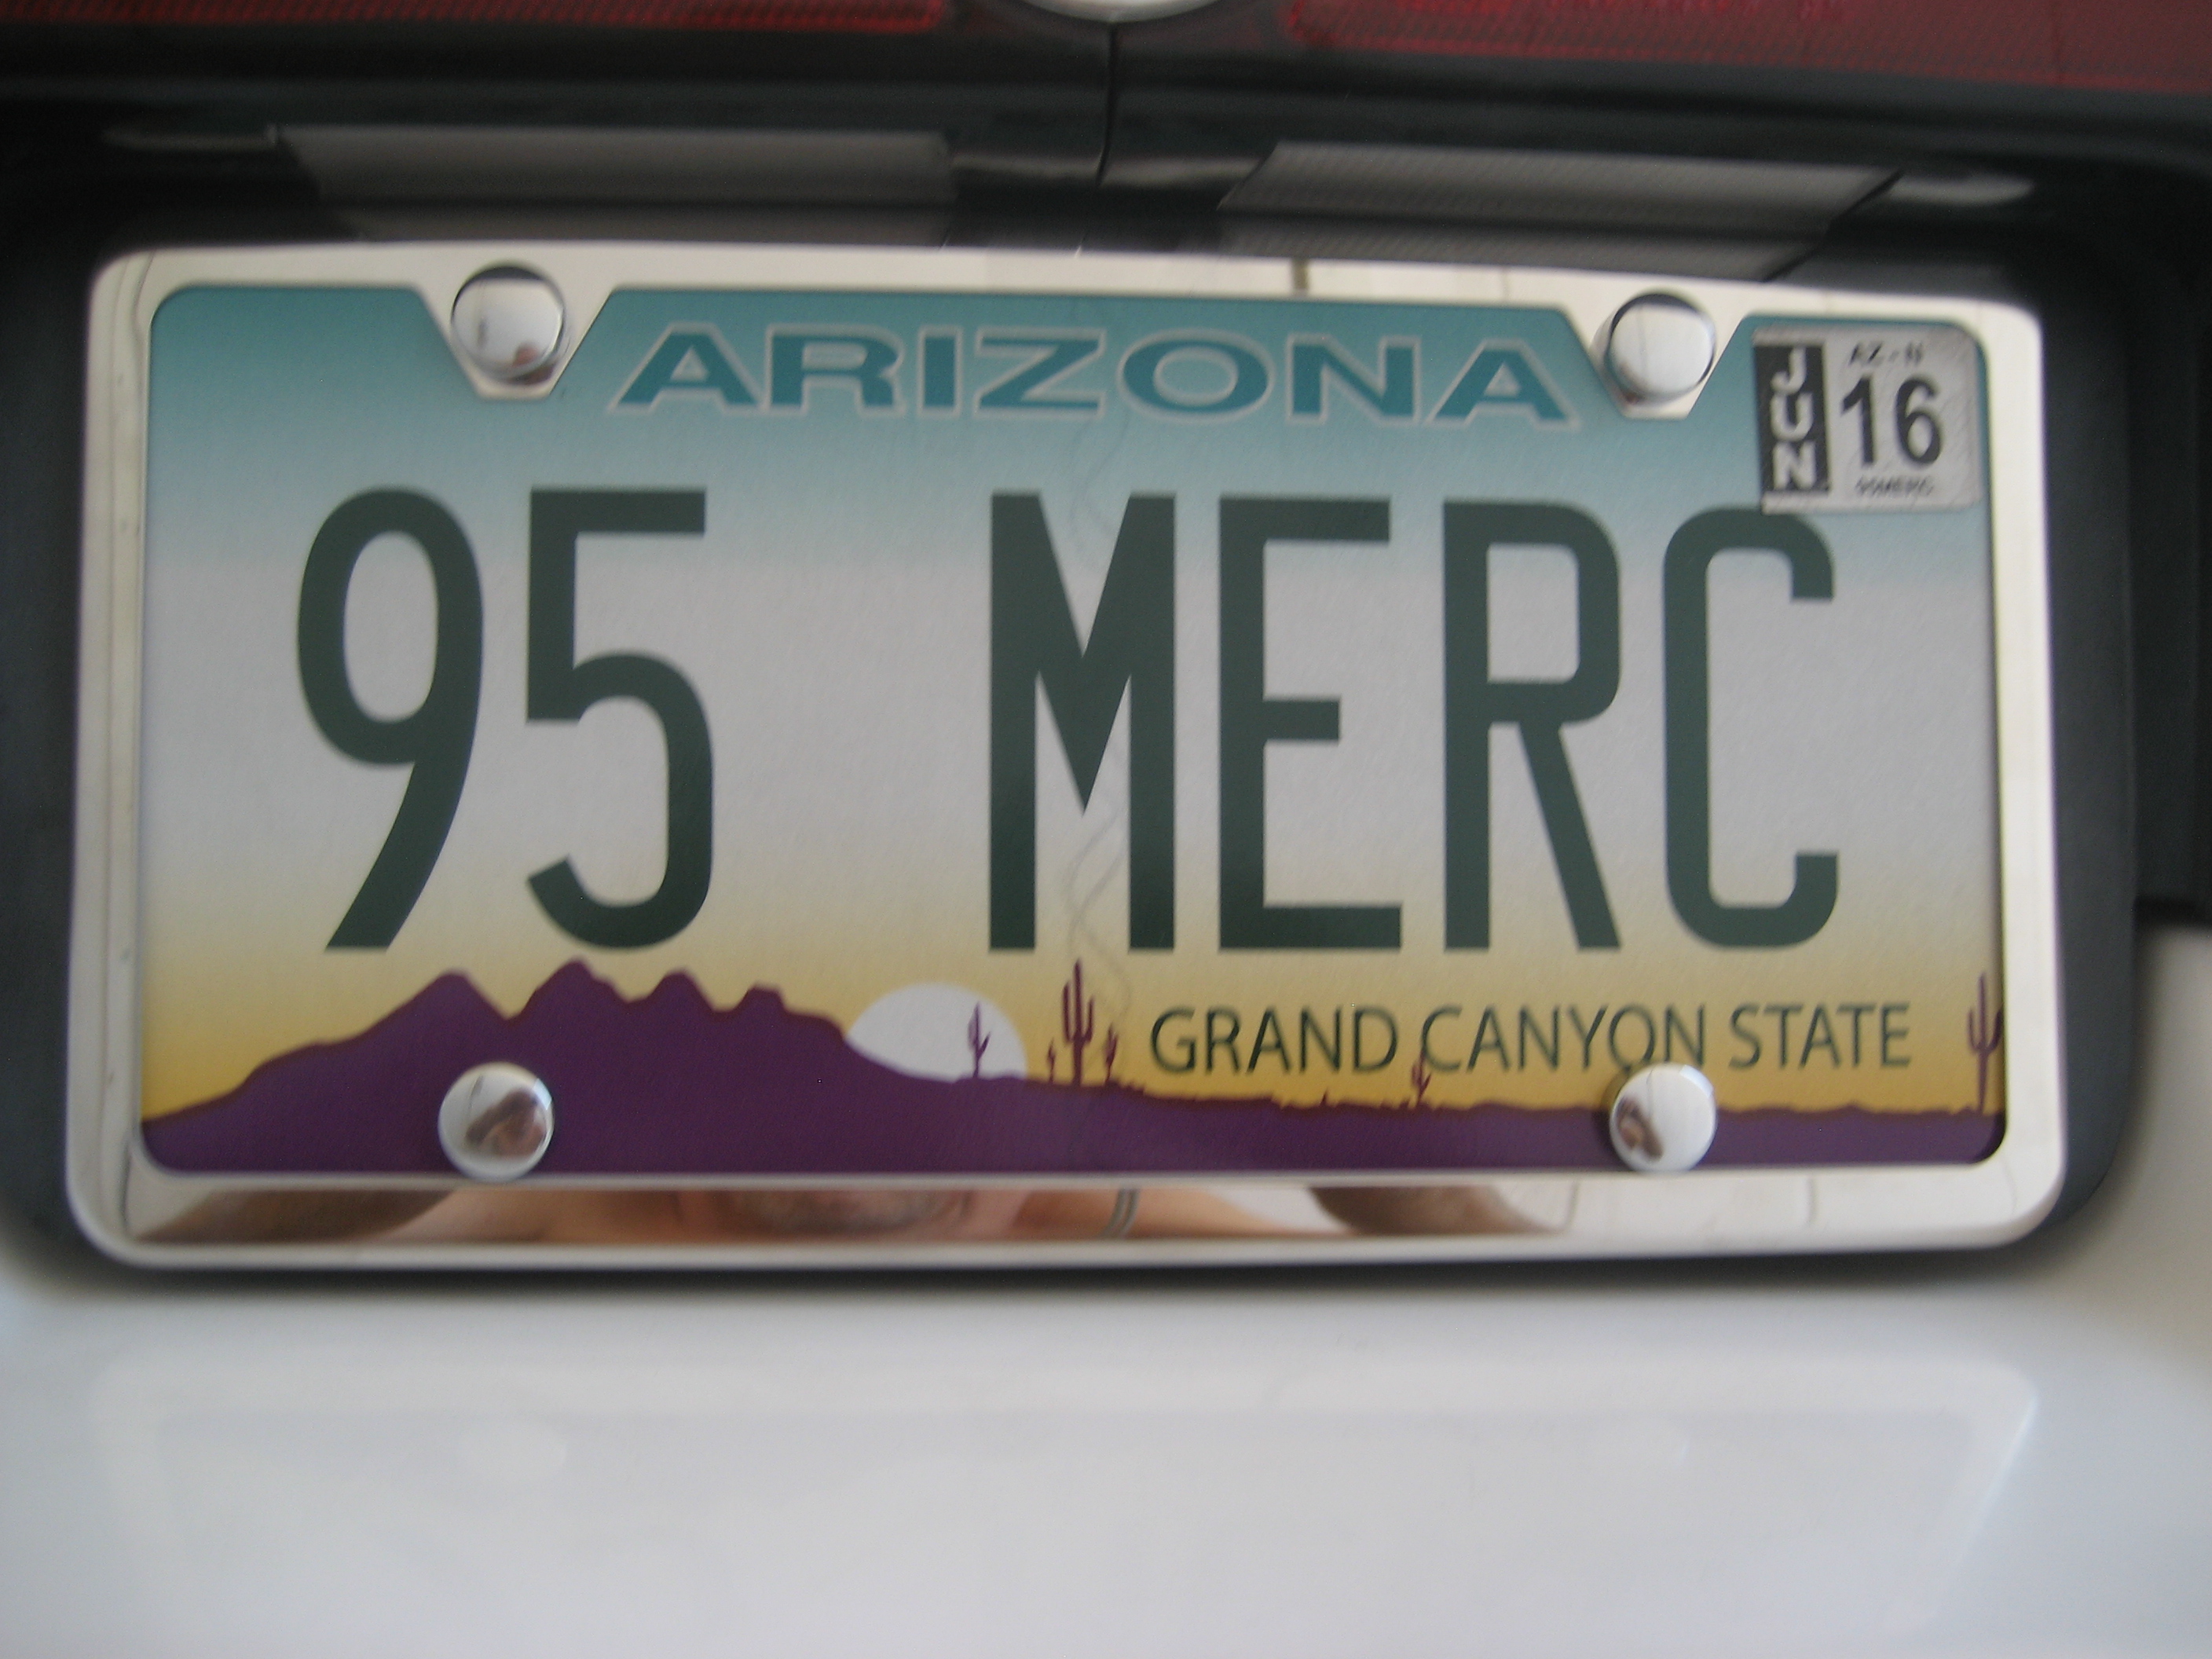 246d1488213559-1999-mercury-marquis-license-plate-95-merc.jpg